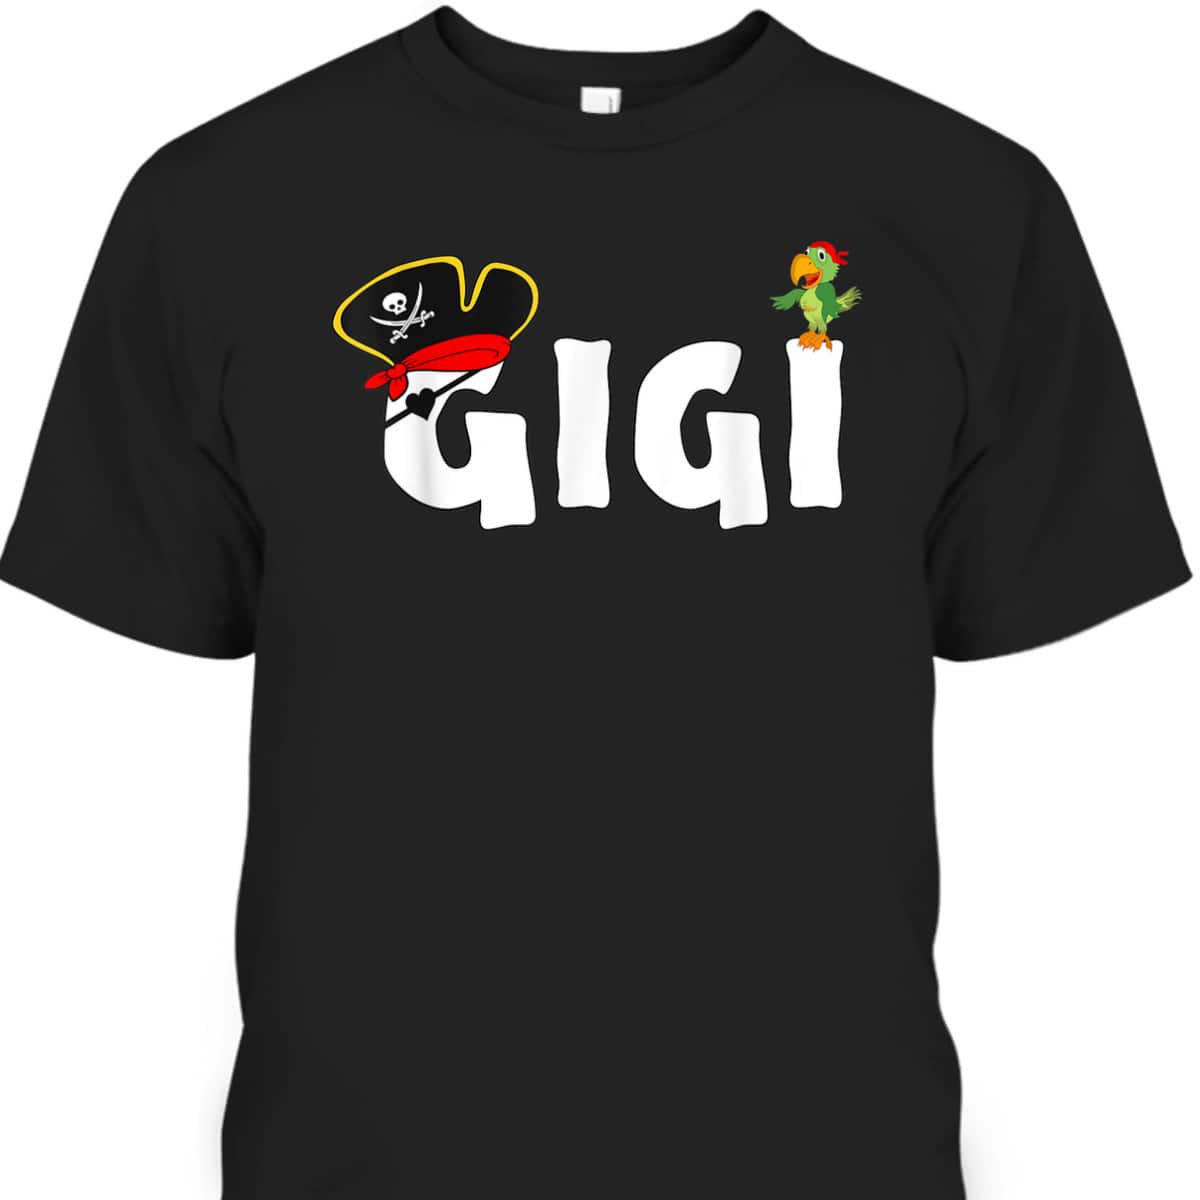 Mother's Day T-Shirt Gift For Gigi Skull And Crossbones Hat